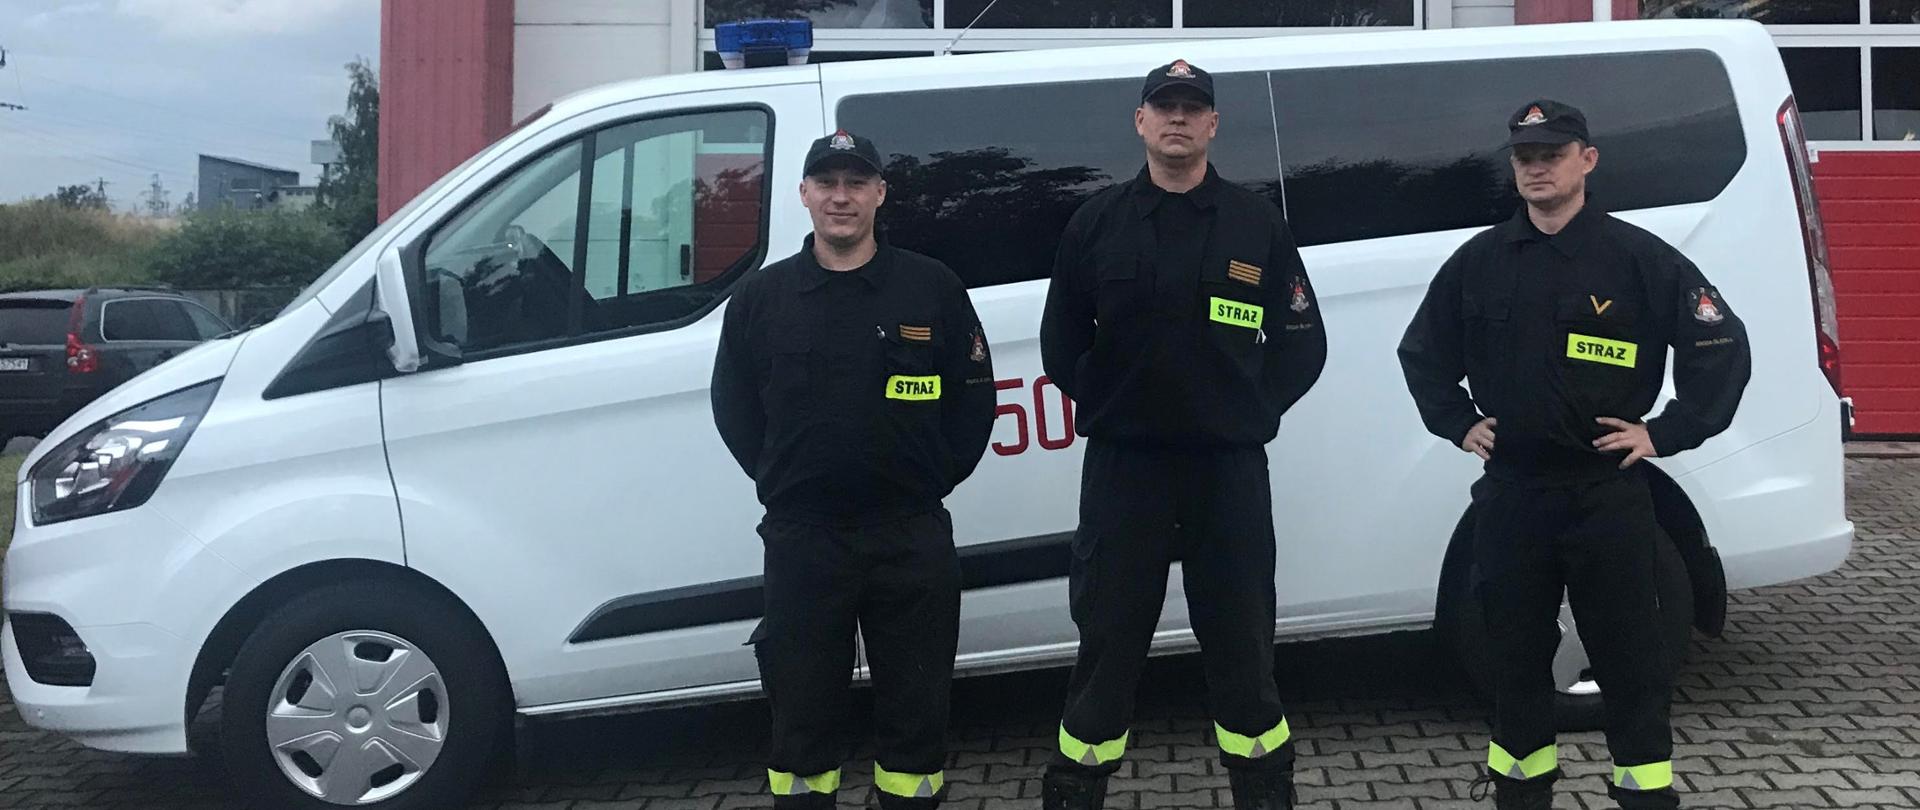 trzech strażaków w mundurach koszarowych stoi na tle busa i bramy garażowej